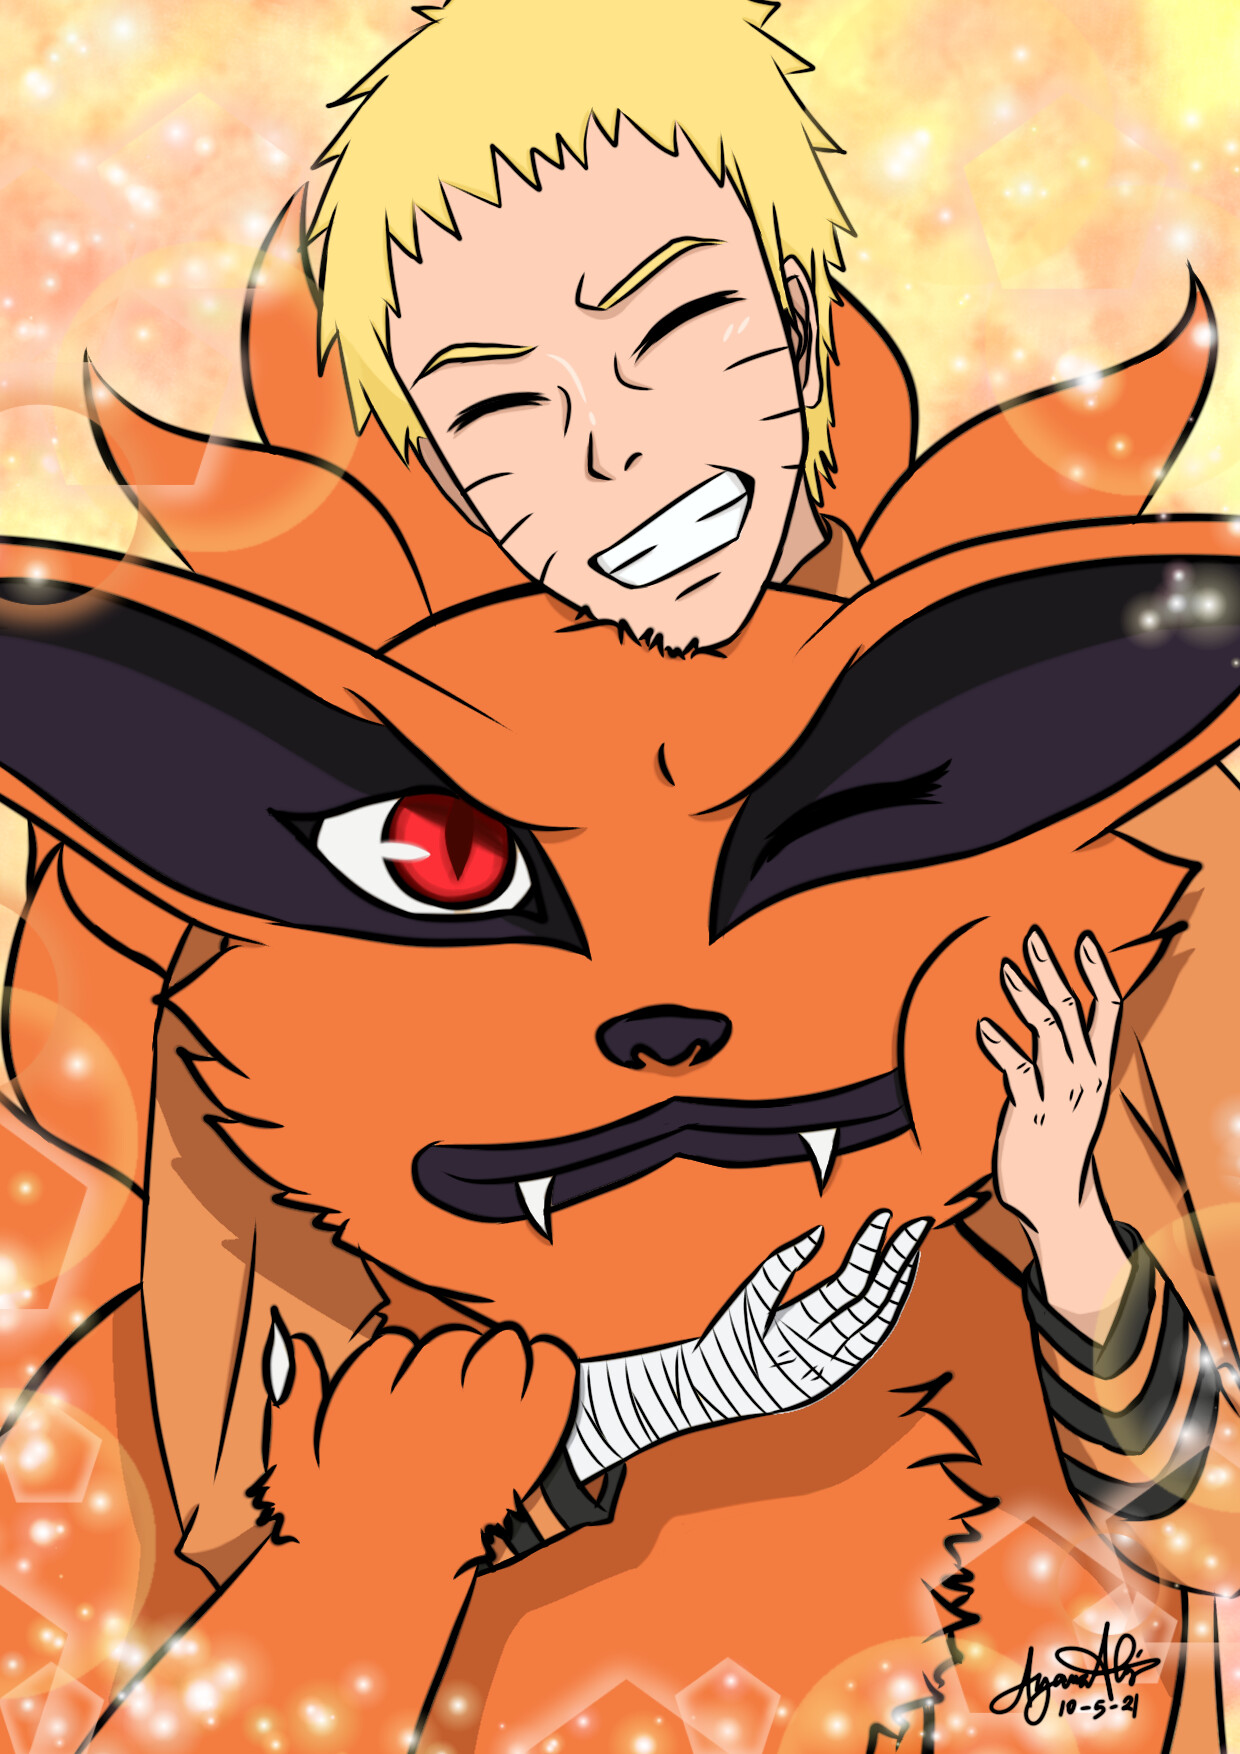 Naruto: Hãy đến và thưởng thức hình ảnh liên quan đến Naruto - chàng trai mang trong mình ước mơ trở thành hokage vĩ đại nhất xứ phồn hoa. Chứng kiến sức mạnh và tình bạn không đổi của Naruto cùng các ninja của Konoha trong cuộc phiêu lưu đầy kịch tính và cảm xúc.